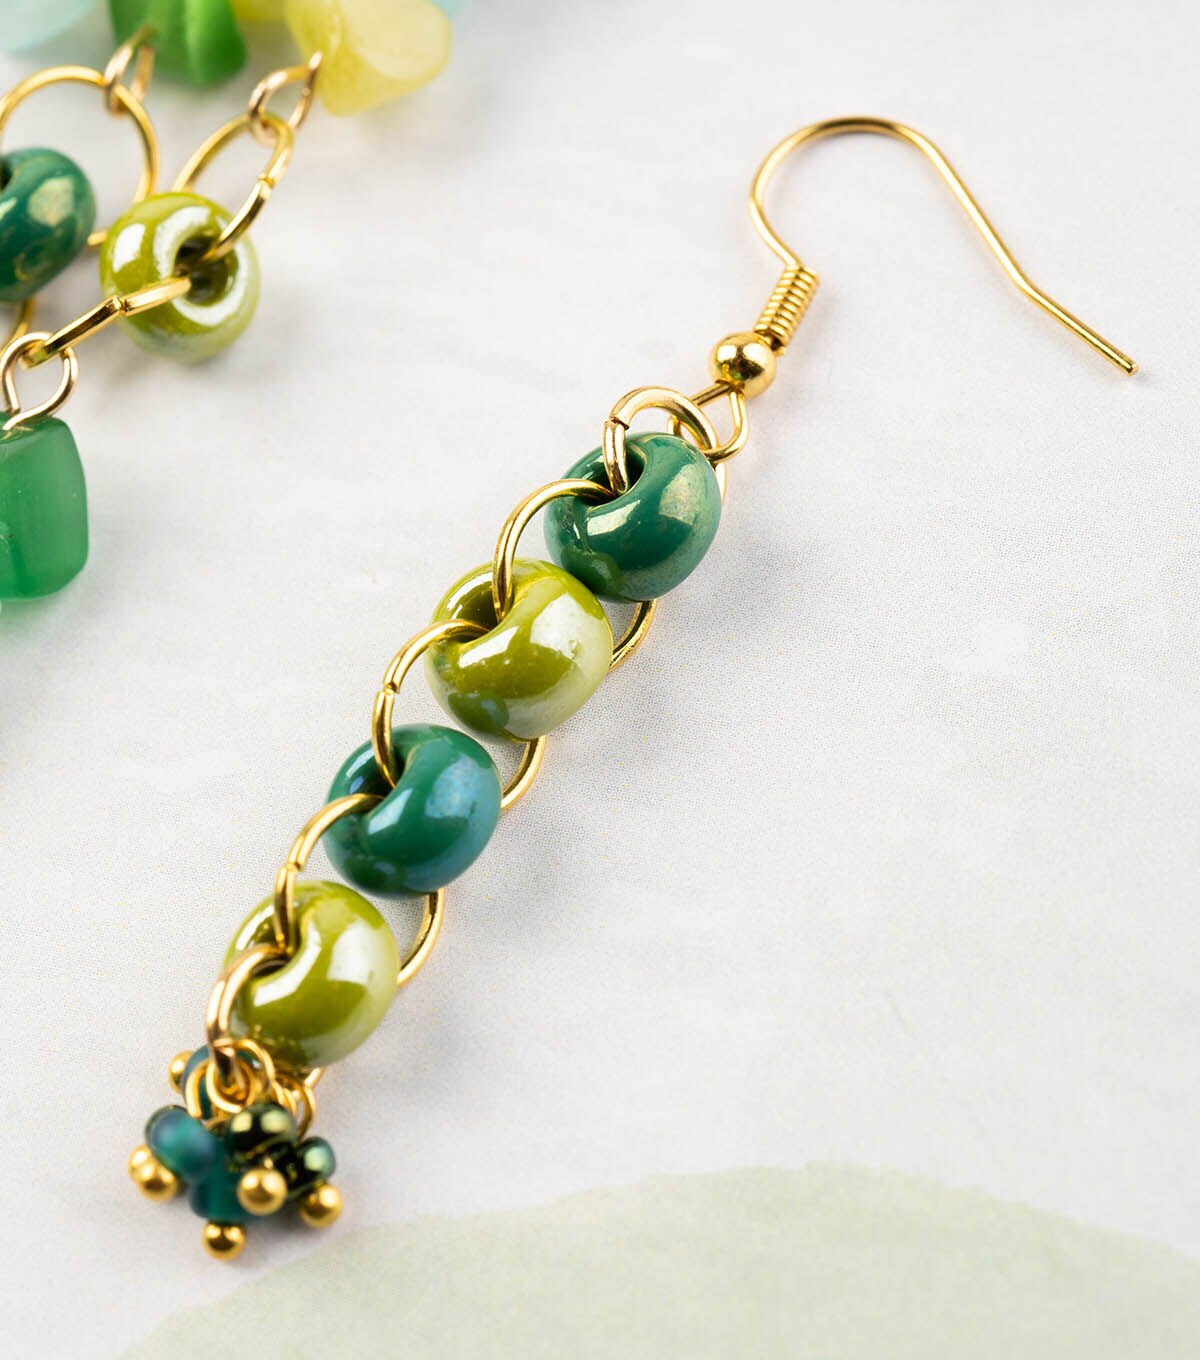 Get Green - Golden Mirror Circular Earrings at ₹ 400 | LBB Shop